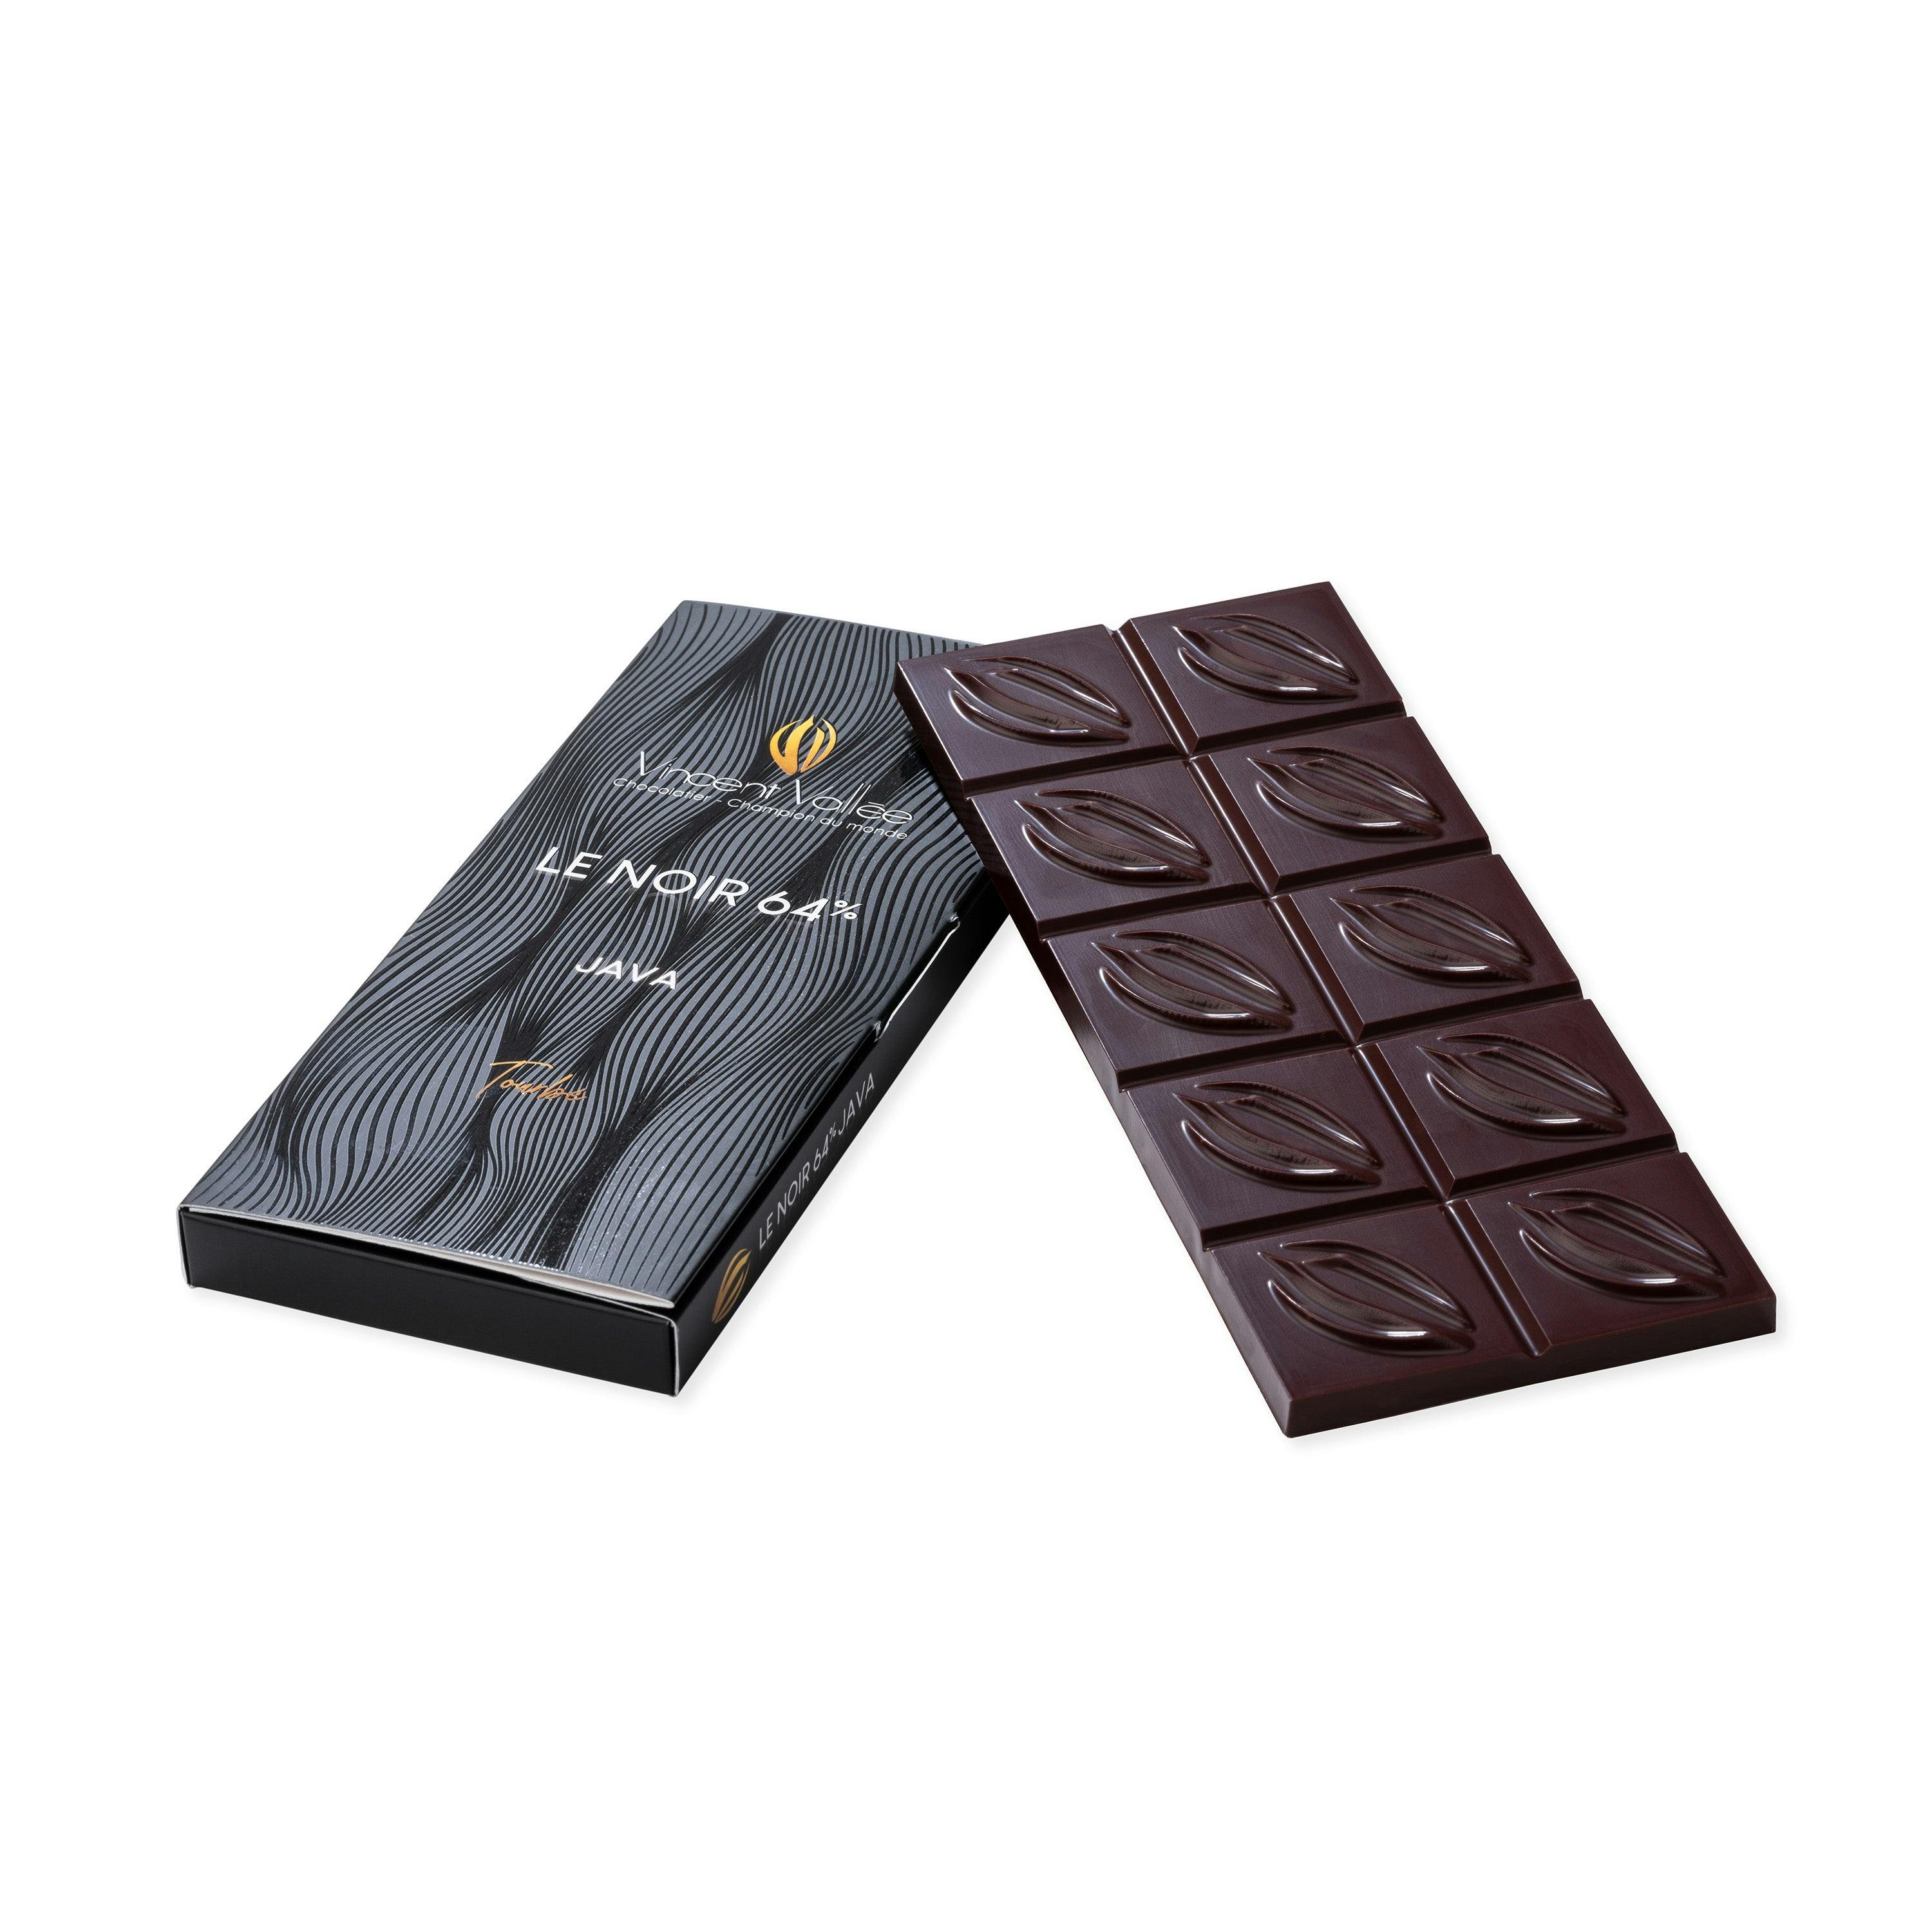 Java 64% - Vincent Vallée world champion chocolatier